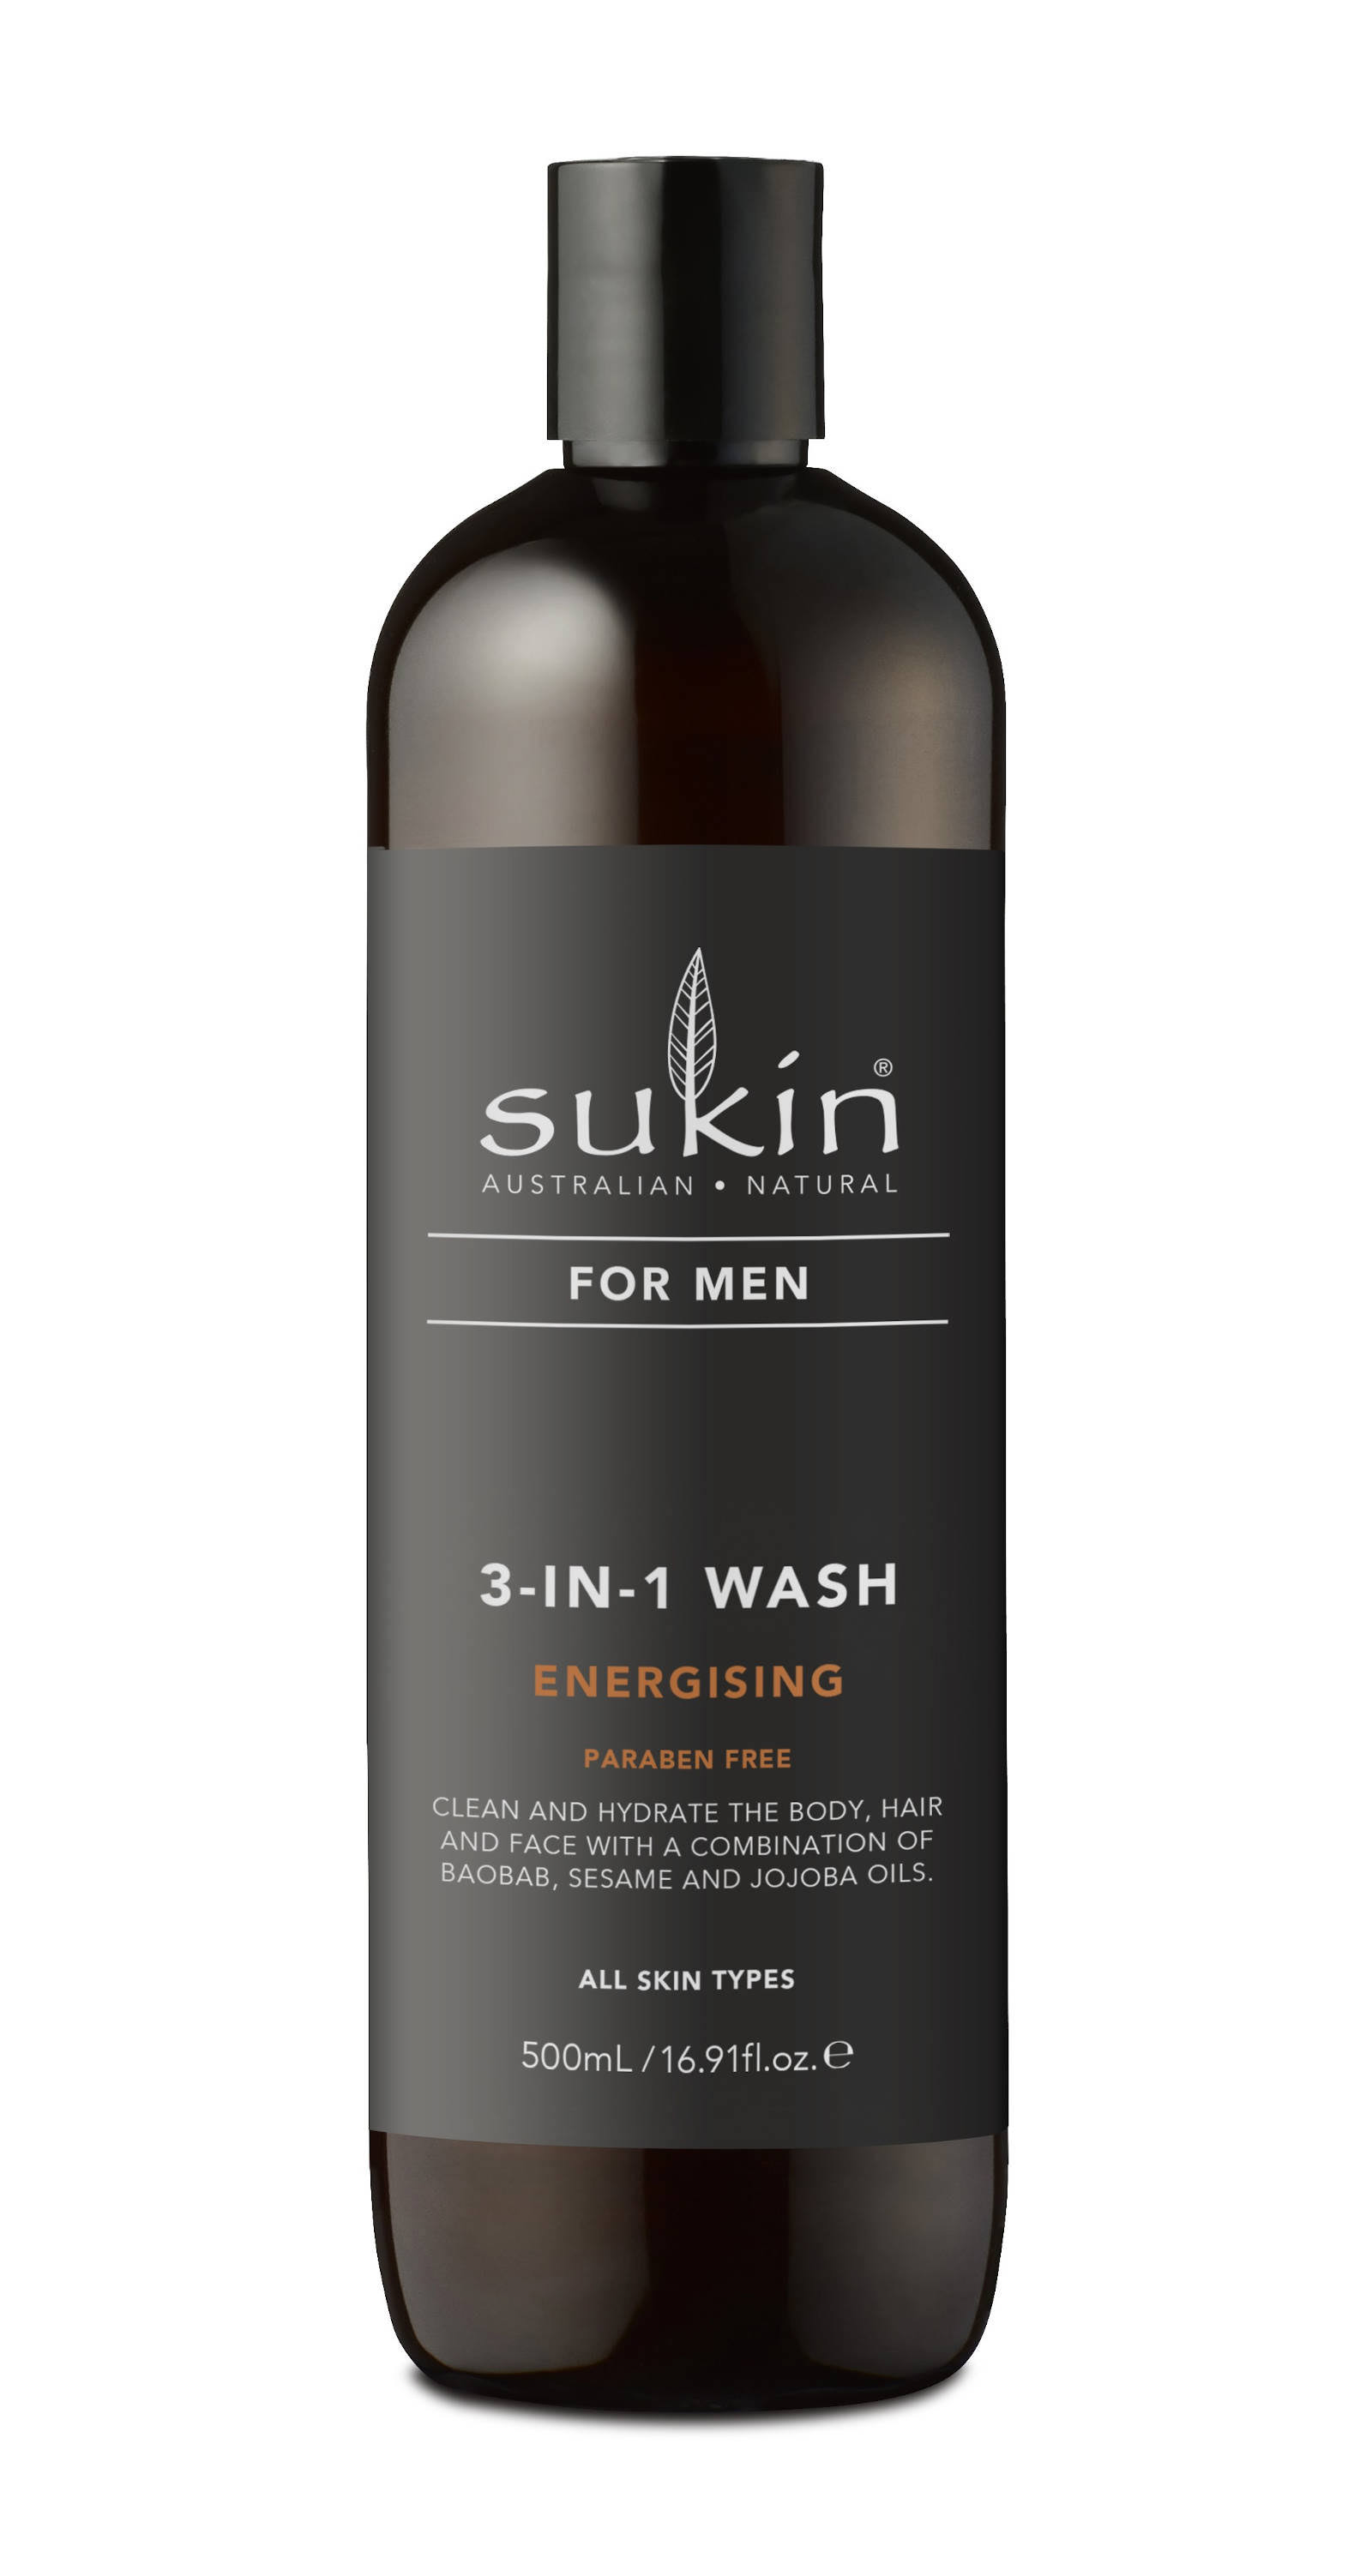 Sukin 3-in-1 Energising Body Wash for Men 500ml